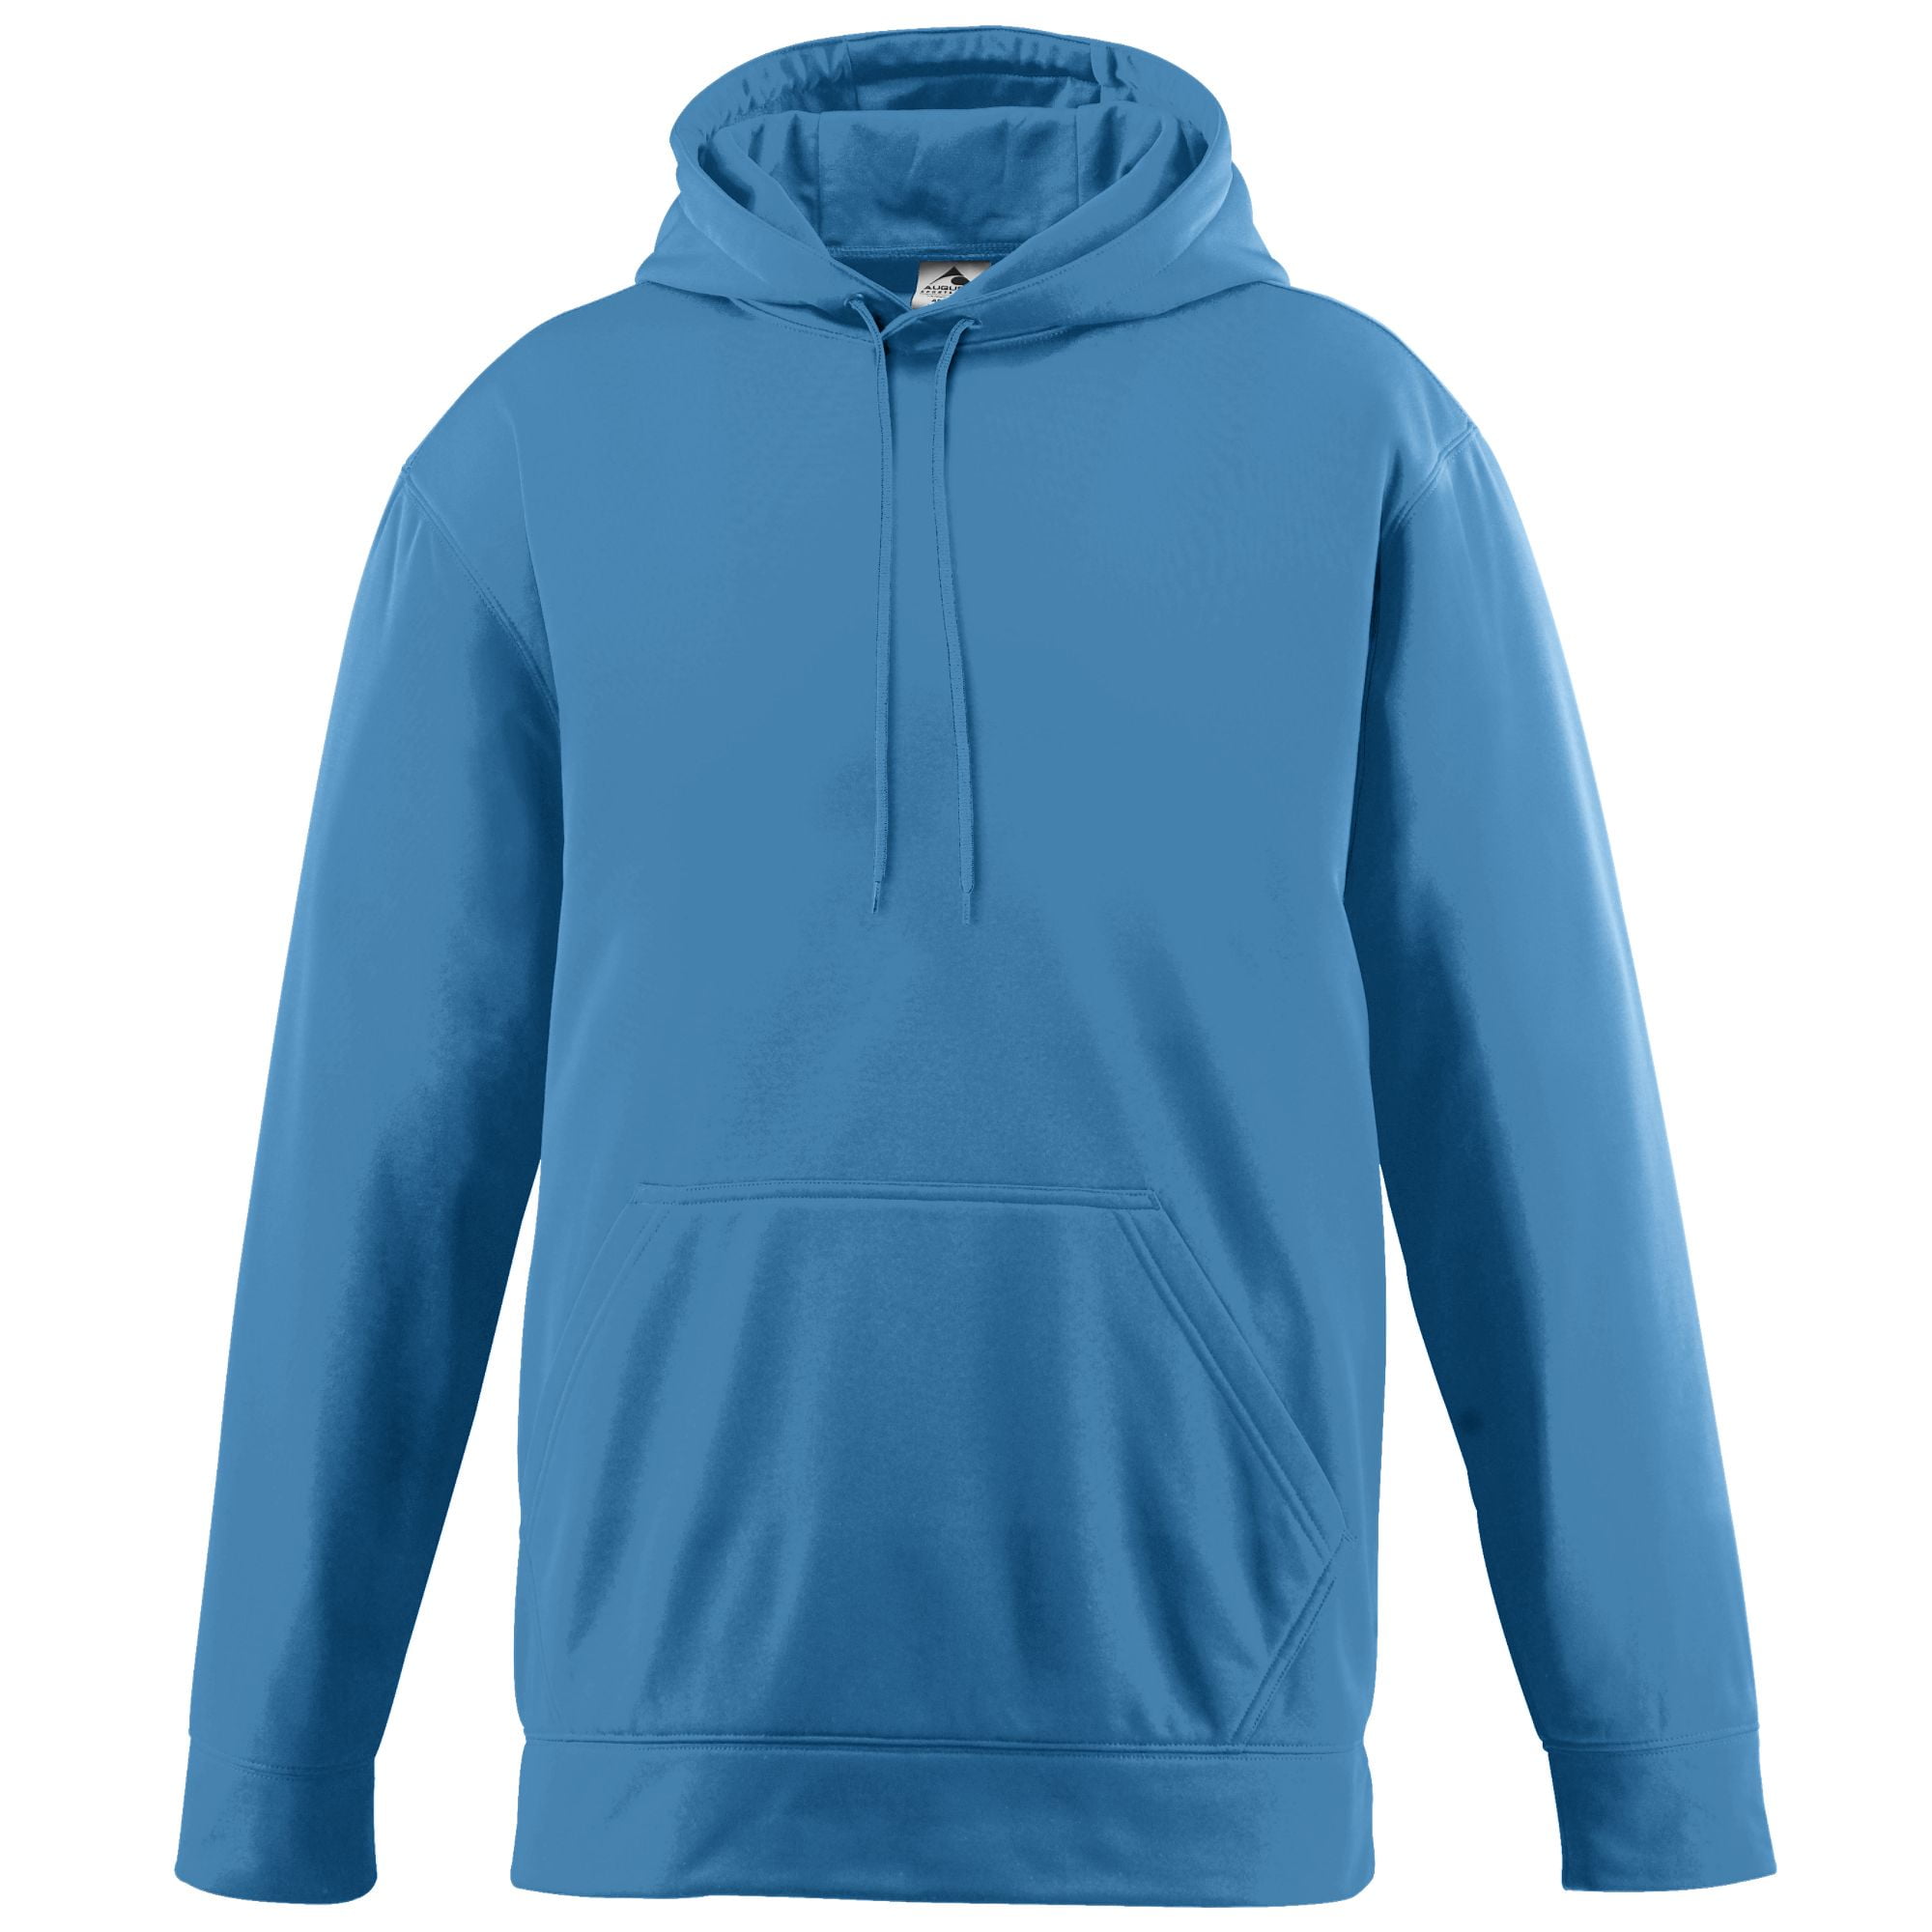 Augusta Sportswear - Augusta Youth Wicking Fleece Hooded Sweatshirt ...